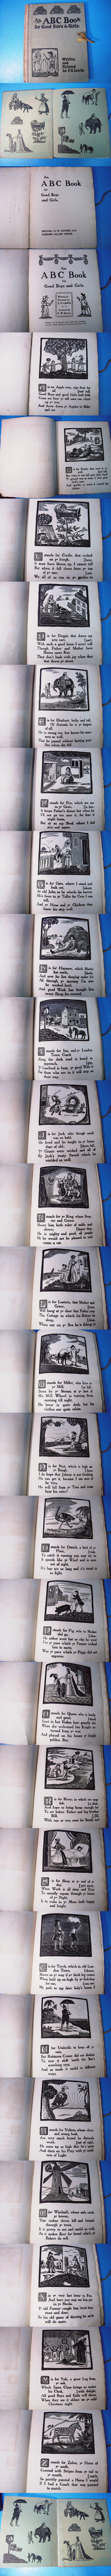 普及品「An ABC Book for Good Boys and Girls by F.G.Lewin /E.W.Savory 1871年頃」全ての頁が木版刷りです！ 洋書